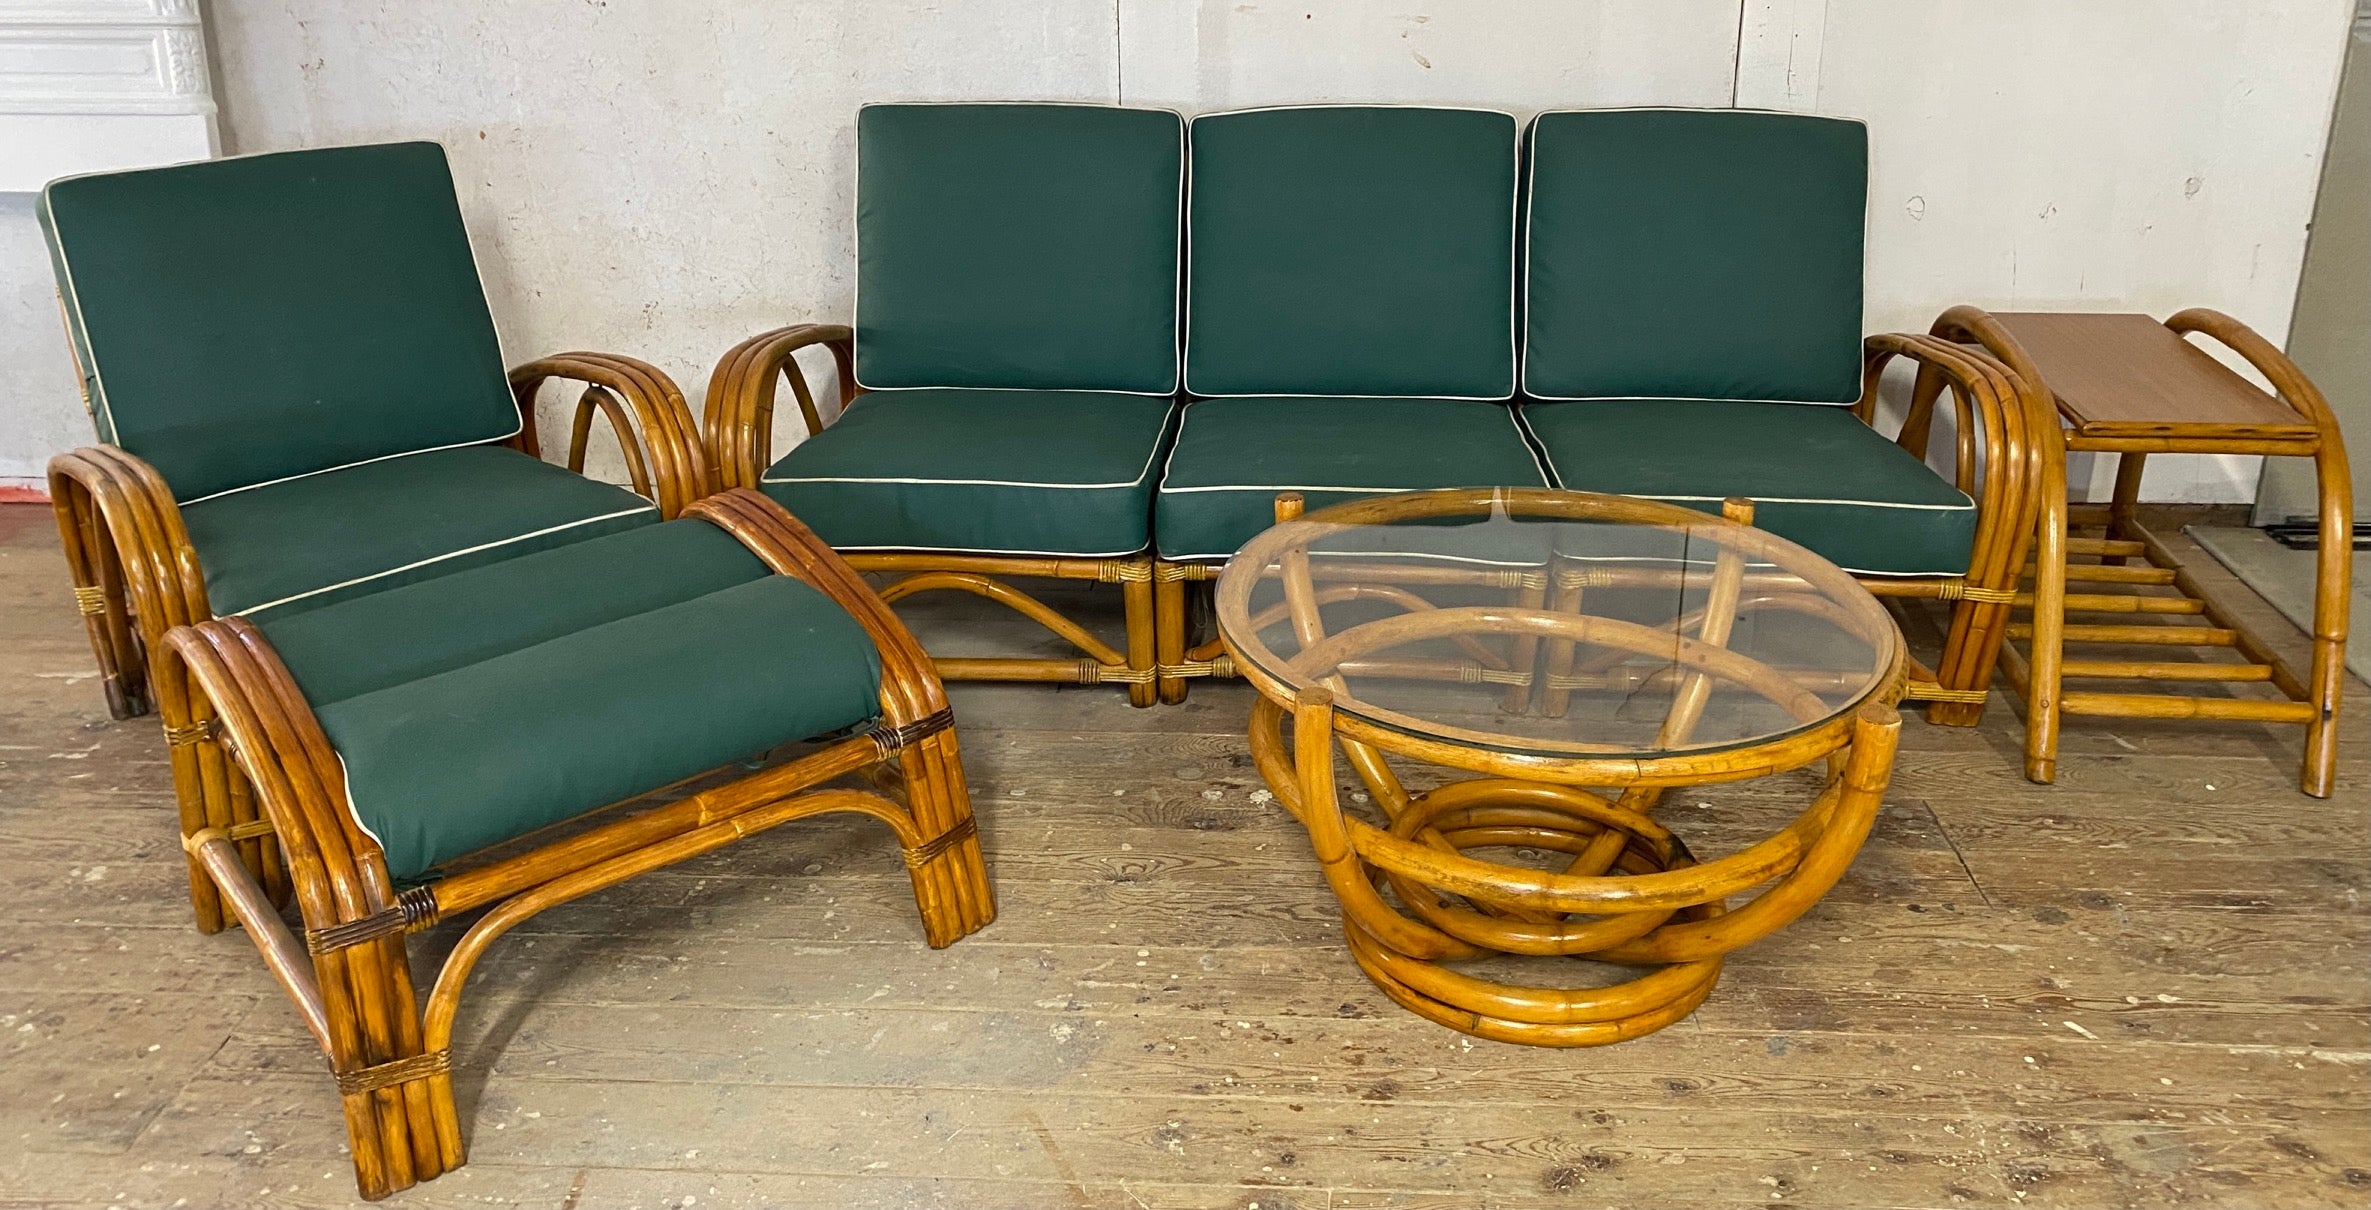 Ensemble de 6 pièces en rotin de style Paul Frankl restauré comprenant un canapé à 3 places séparées, un fauteuil club avec ottoman assorti, une table d'appoint, une table d'angle à 2 niveaux et une table basse ronde en verre. Coussins recouverts